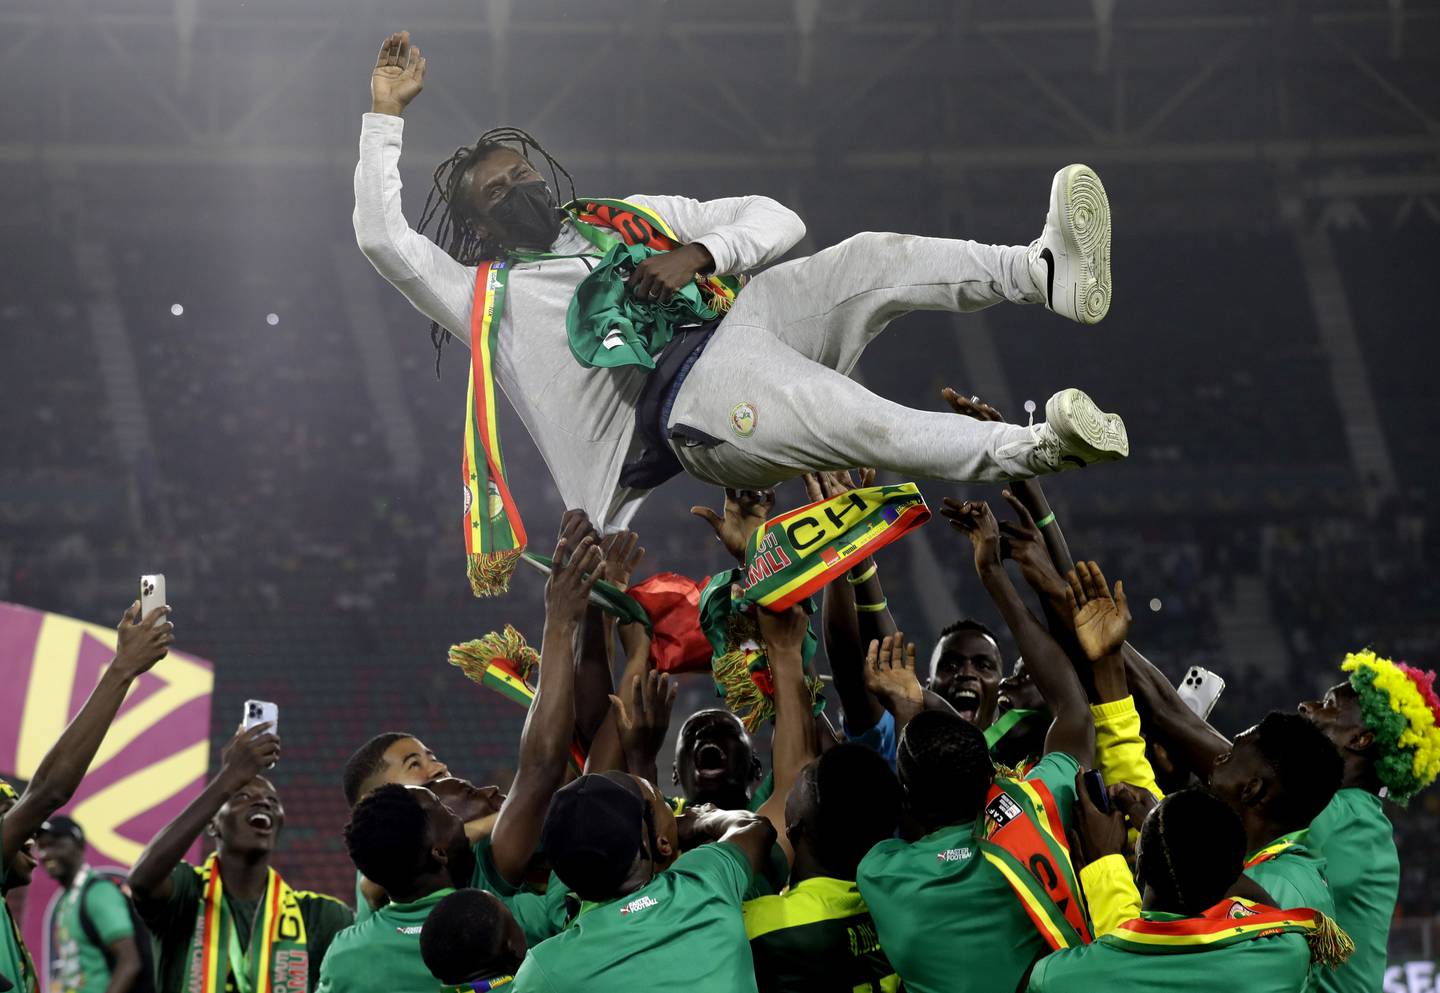 لاعبون سنغاليون يرمون المدرب عليو سيسي في الهواء بعد فوزه بكأس الأمم الأفريقية.  السلطة الفلسطينية